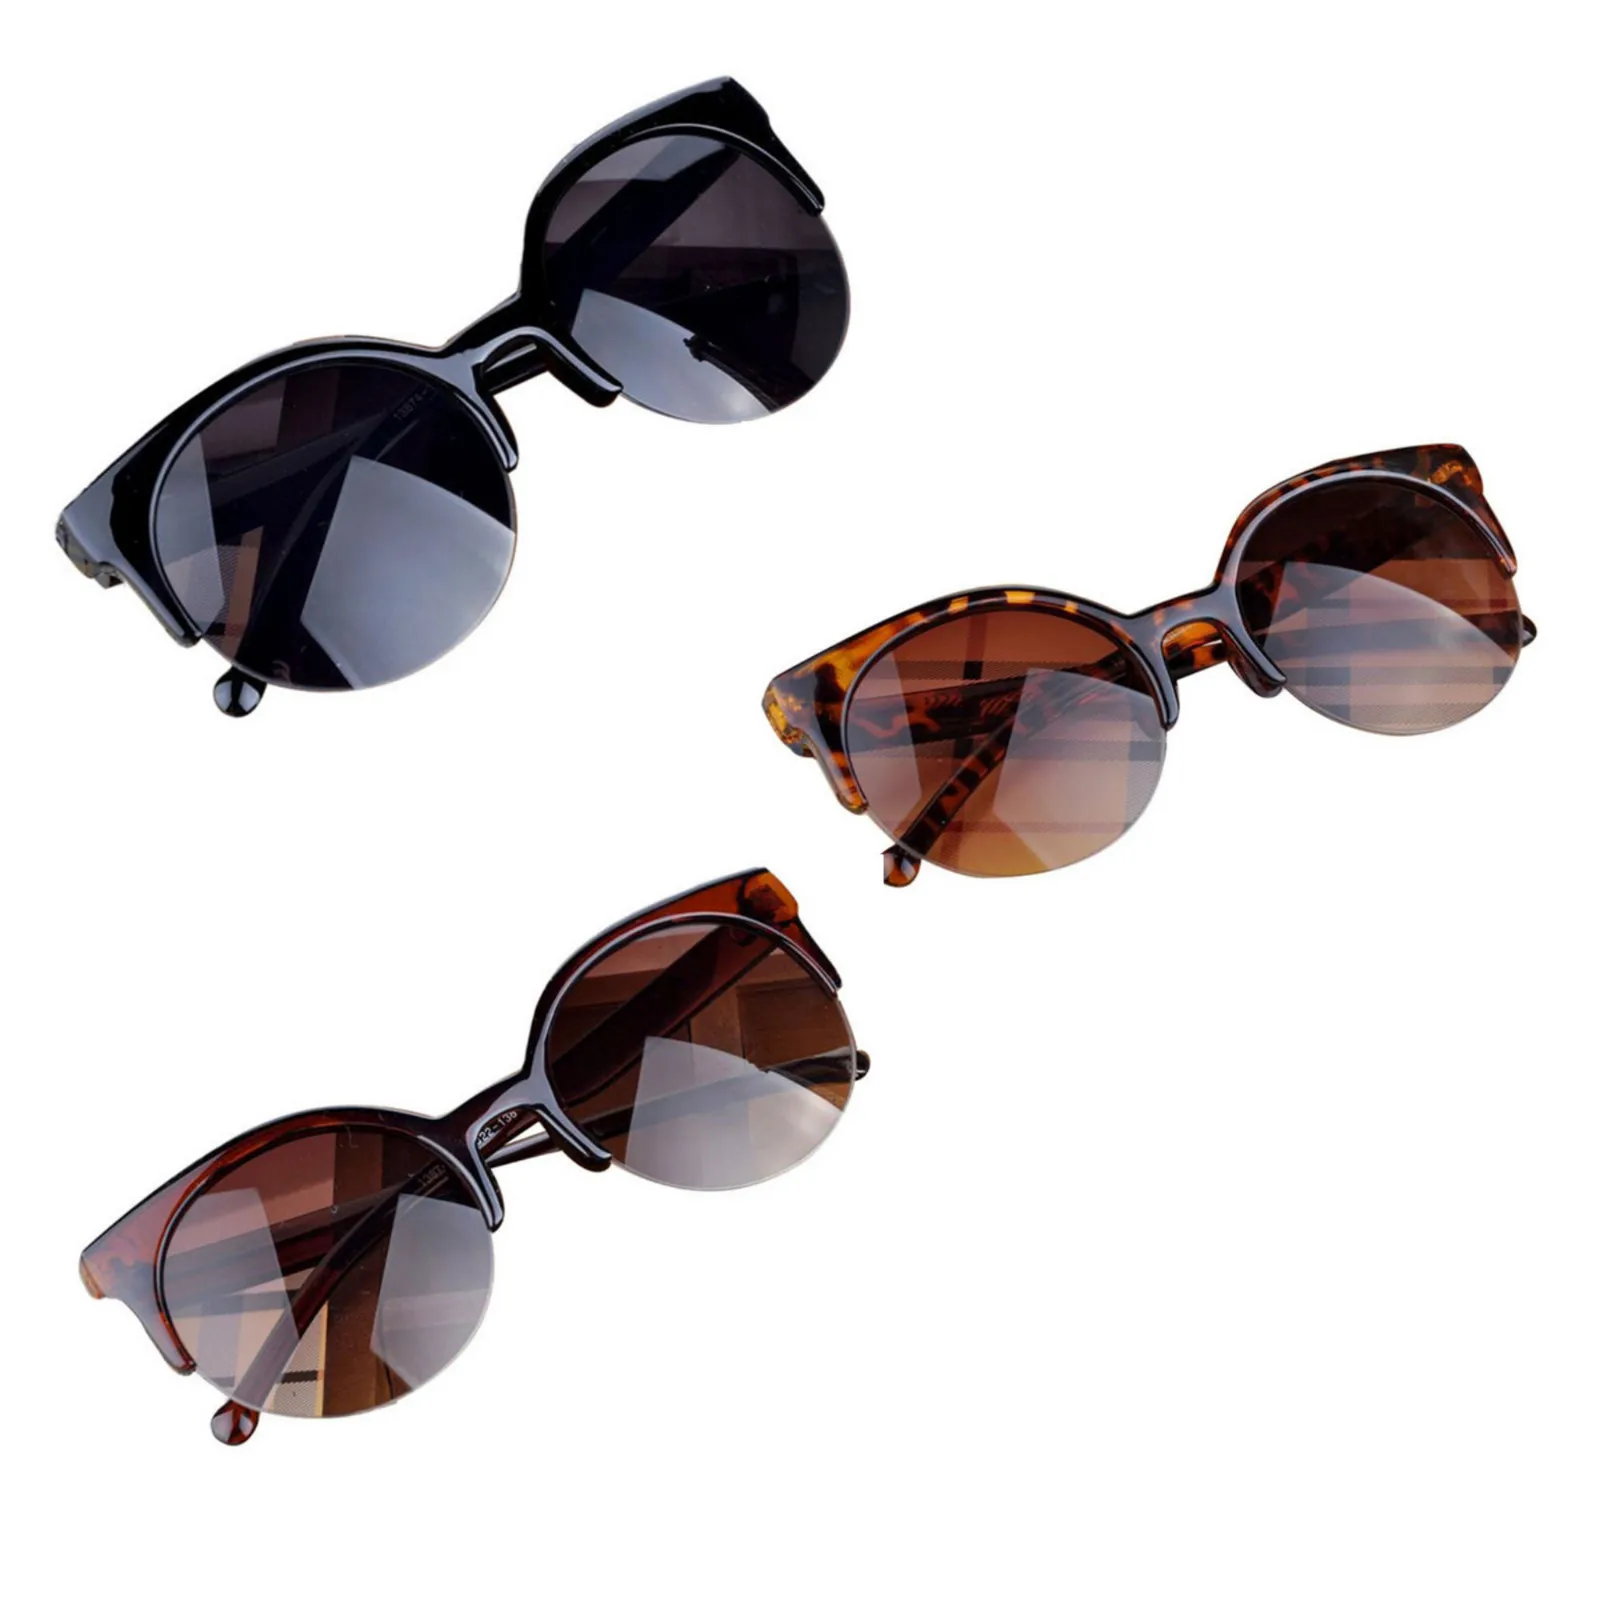 Новые Модные Винтажные Солнцезащитные очки Ретро в форме кошачьих глаз полуобода Круглые Солнцезащитные очки для мужчин и женщин солнцезащитные очки для вождения очки аксессуары